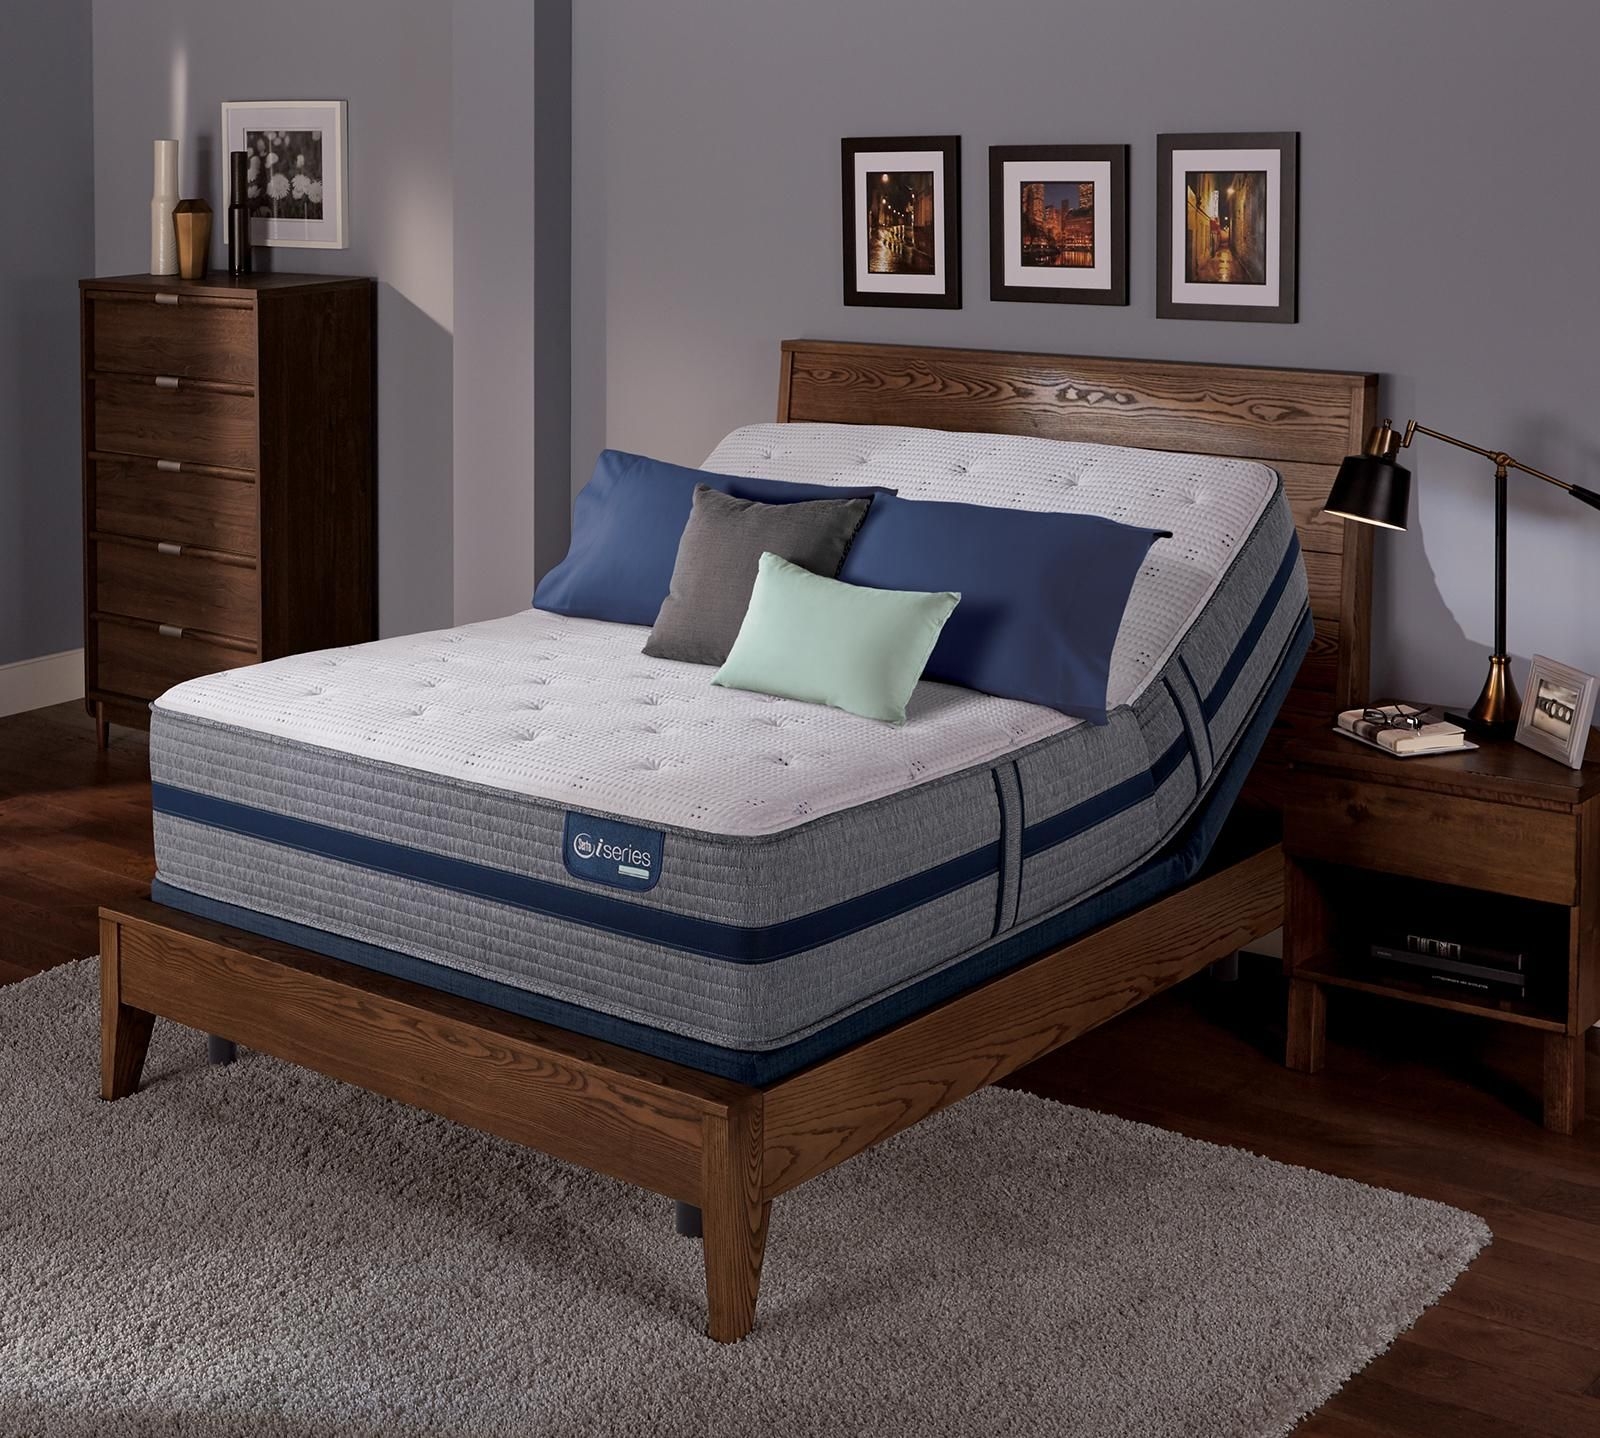 Headboards For Adjustable Beds Visualhunt, Best Adjustable Bed Frame For Tempurpedic Mattress